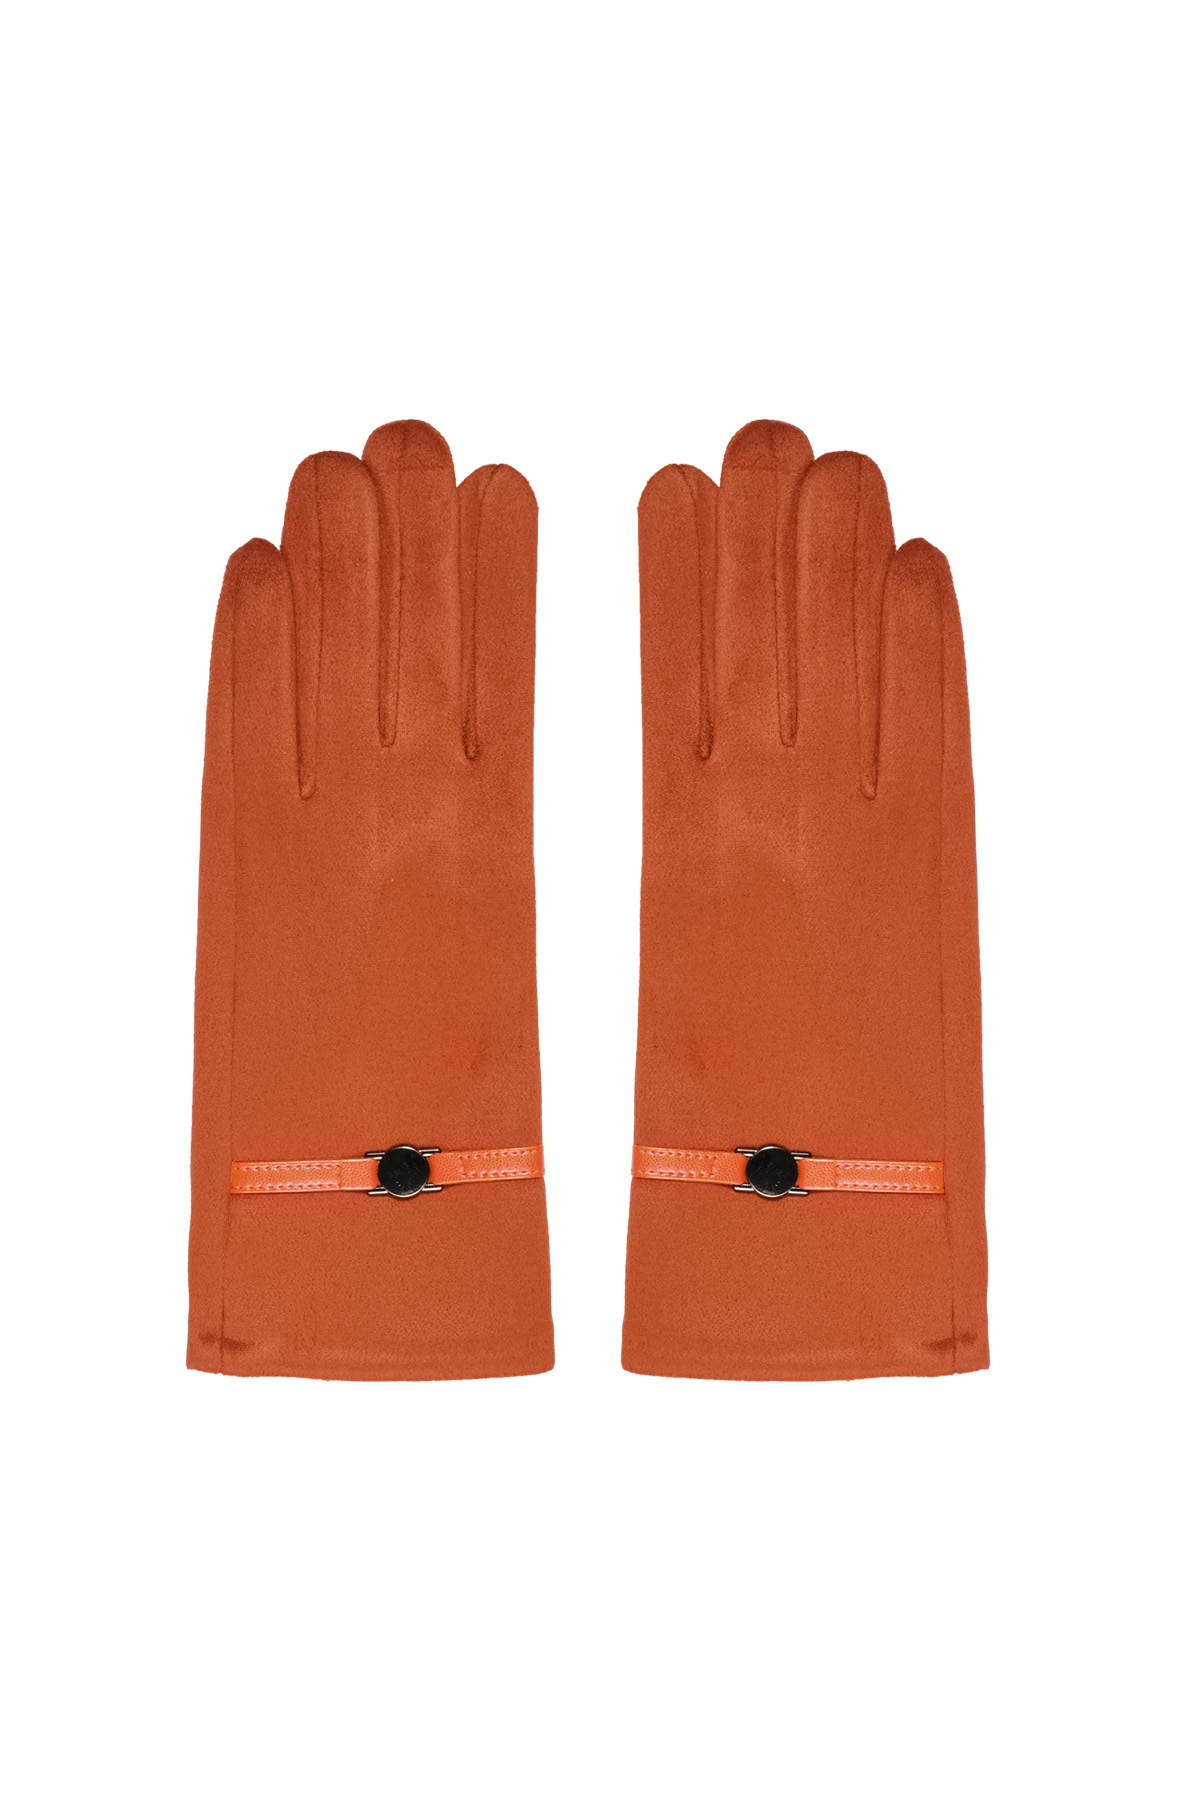 Handschoenen riepje - oranje h5 